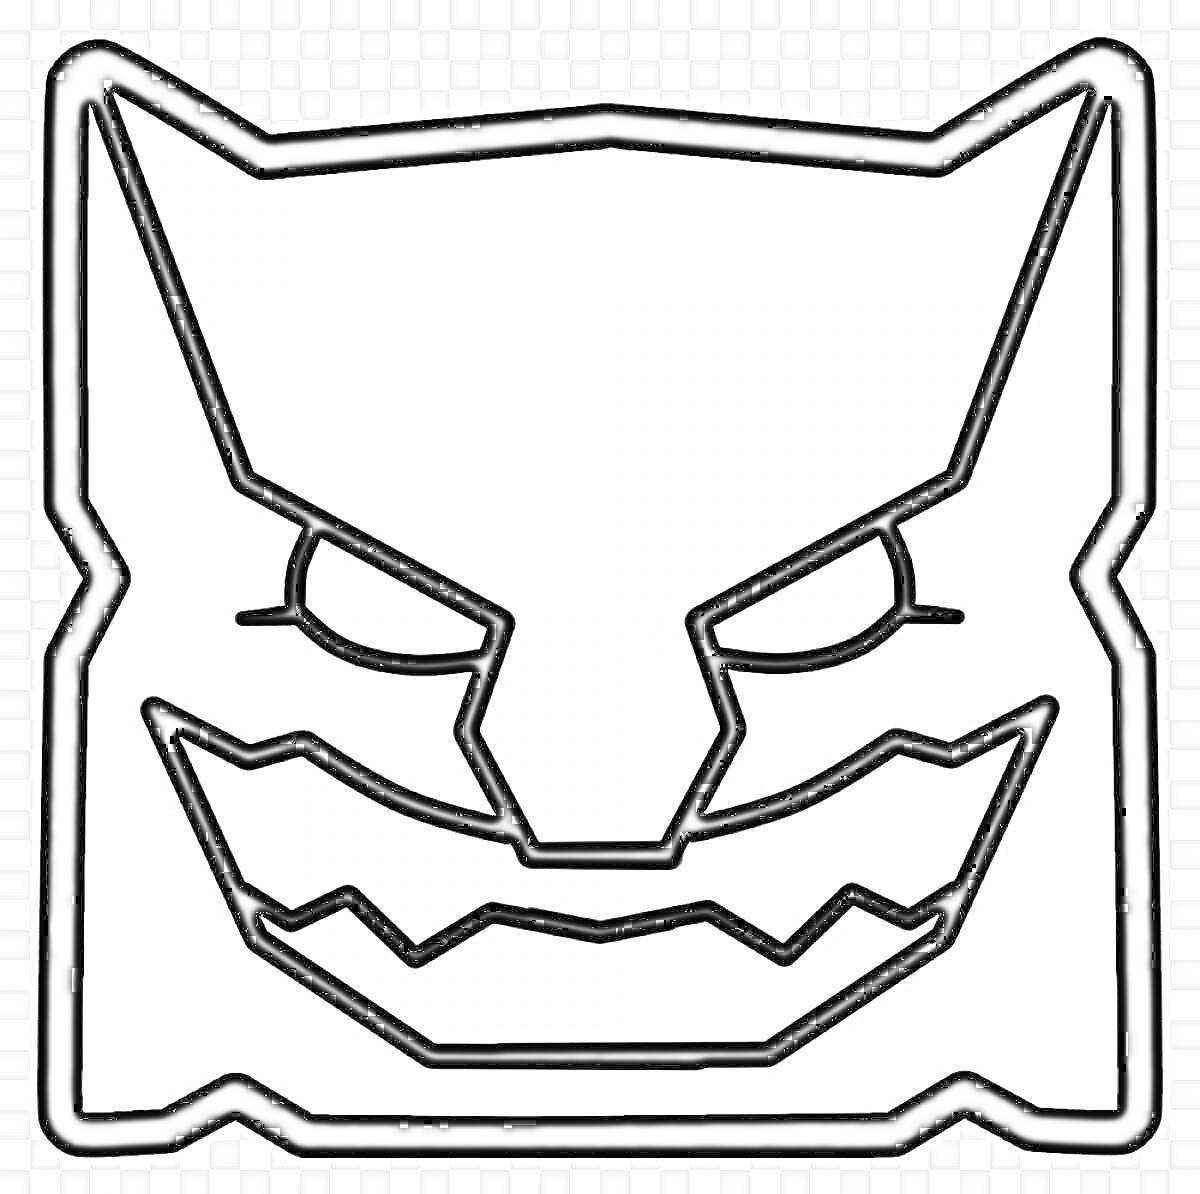 Изображение демона с острыми ушами и зубами для раскраски. Элемент игры Geometry Dash.